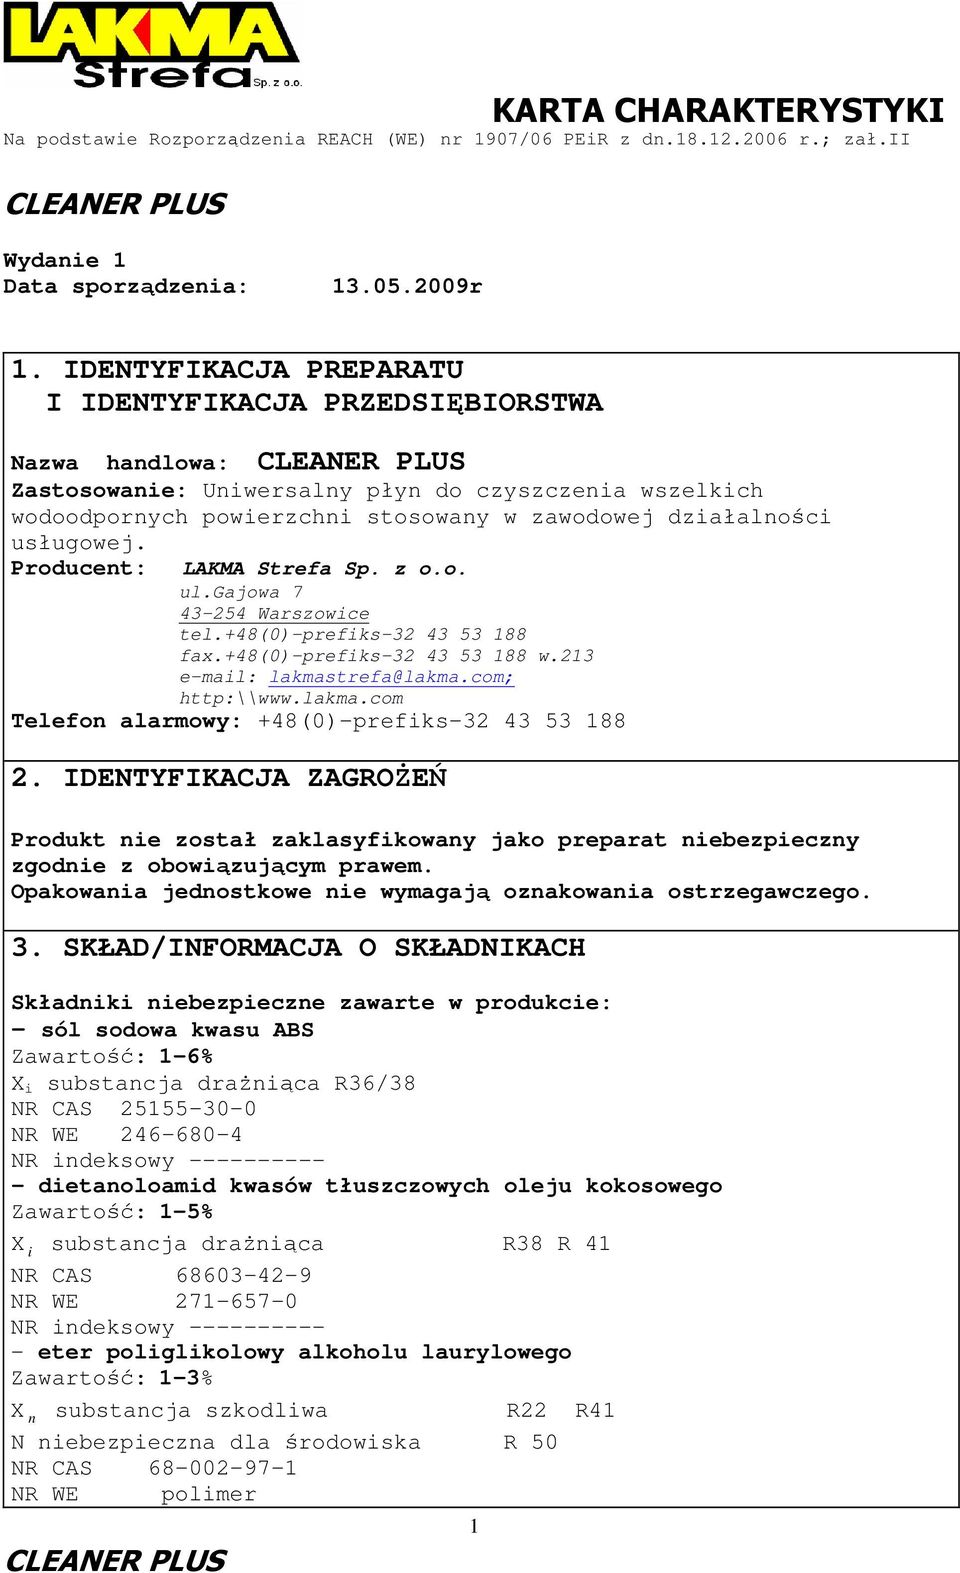 Producent: LAKMA Strefa Sp. z o.o. ul.gajowa 7 43-254 Warszowice tel.+48(0)-prefiks-32 43 53 188 fax.+48(0)-prefiks-32 43 53 188 w.213 e-mail: lakmas